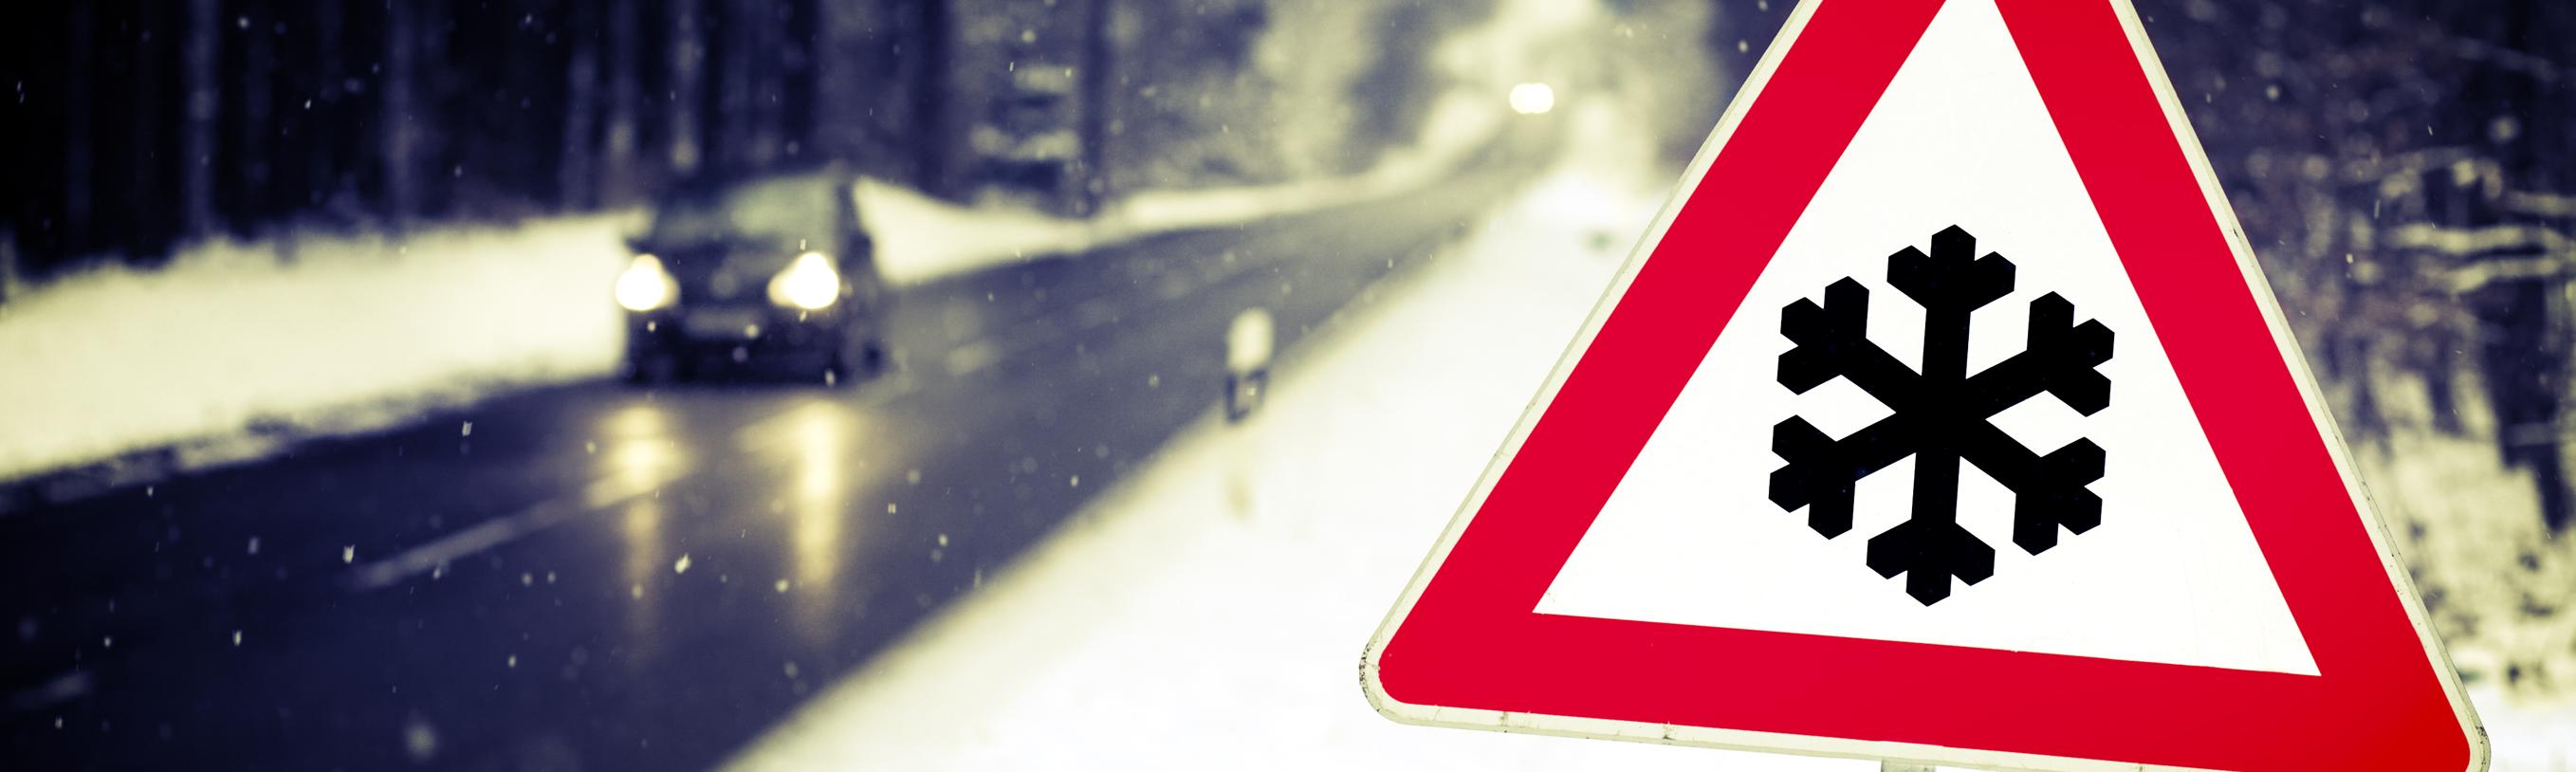 Conduire en hiver : les bons réflexes pour circuler en sécurité !